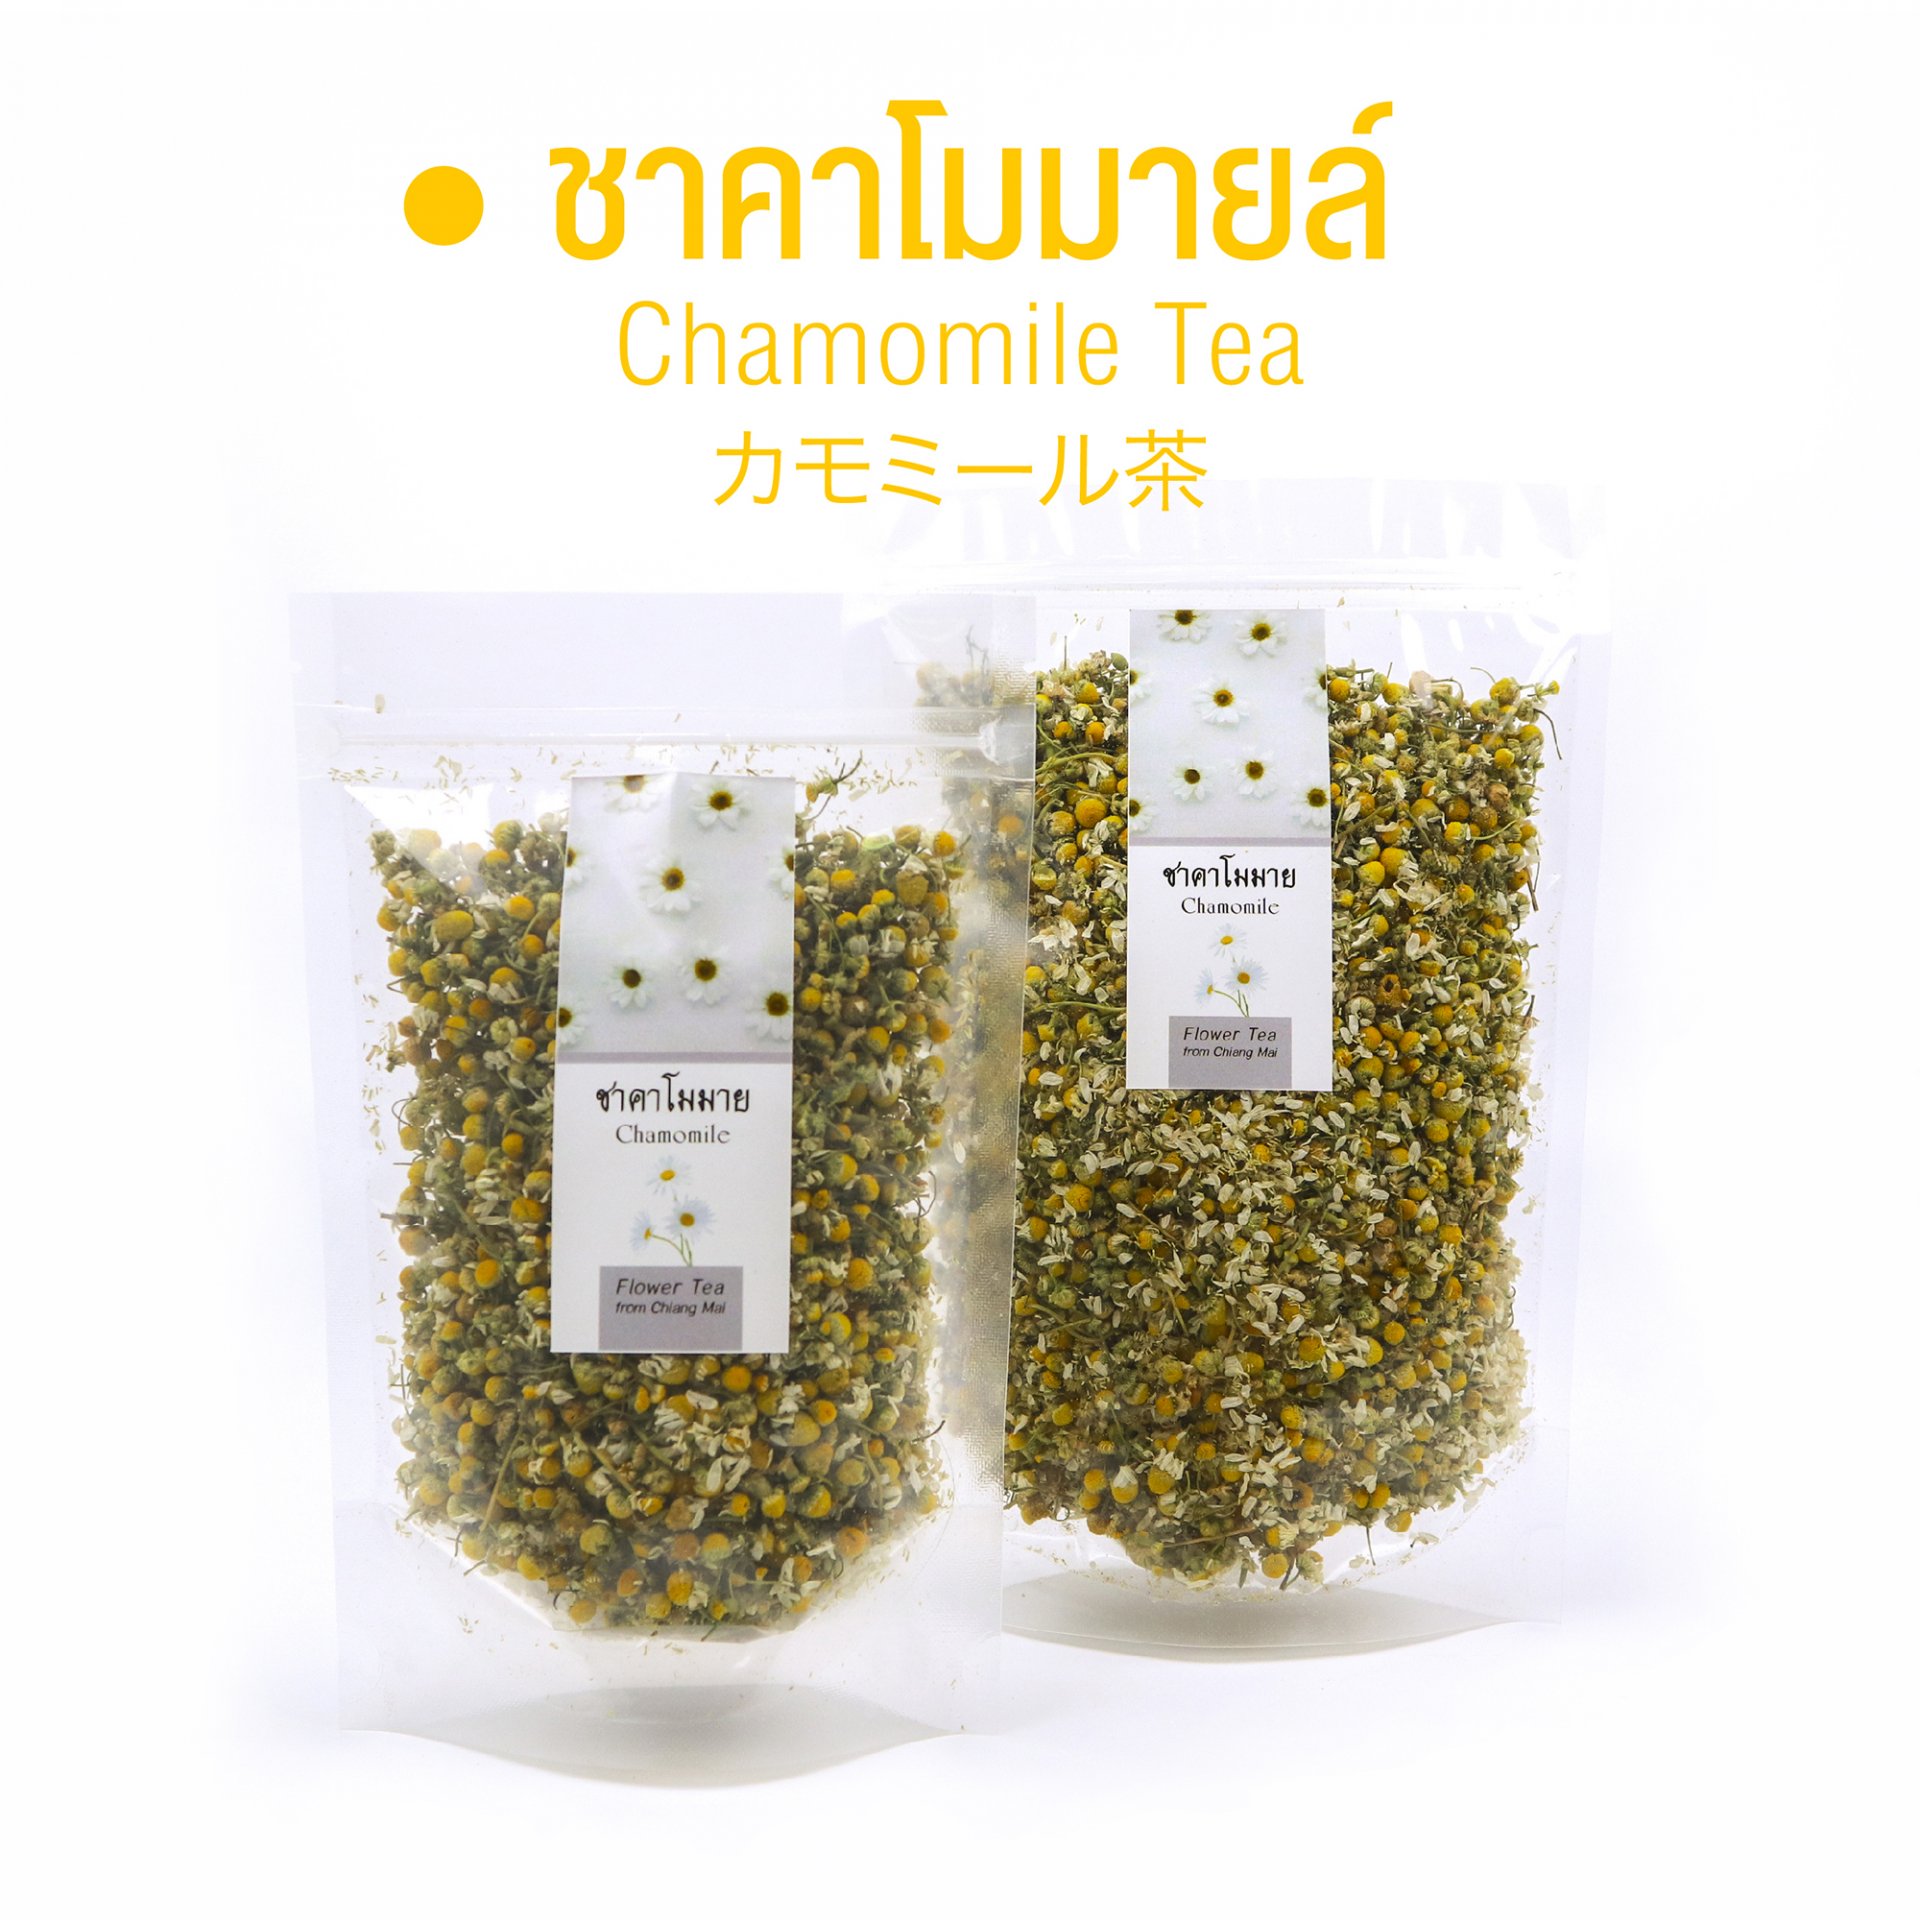 ชาคาโมมายล์ Chamomile Tea